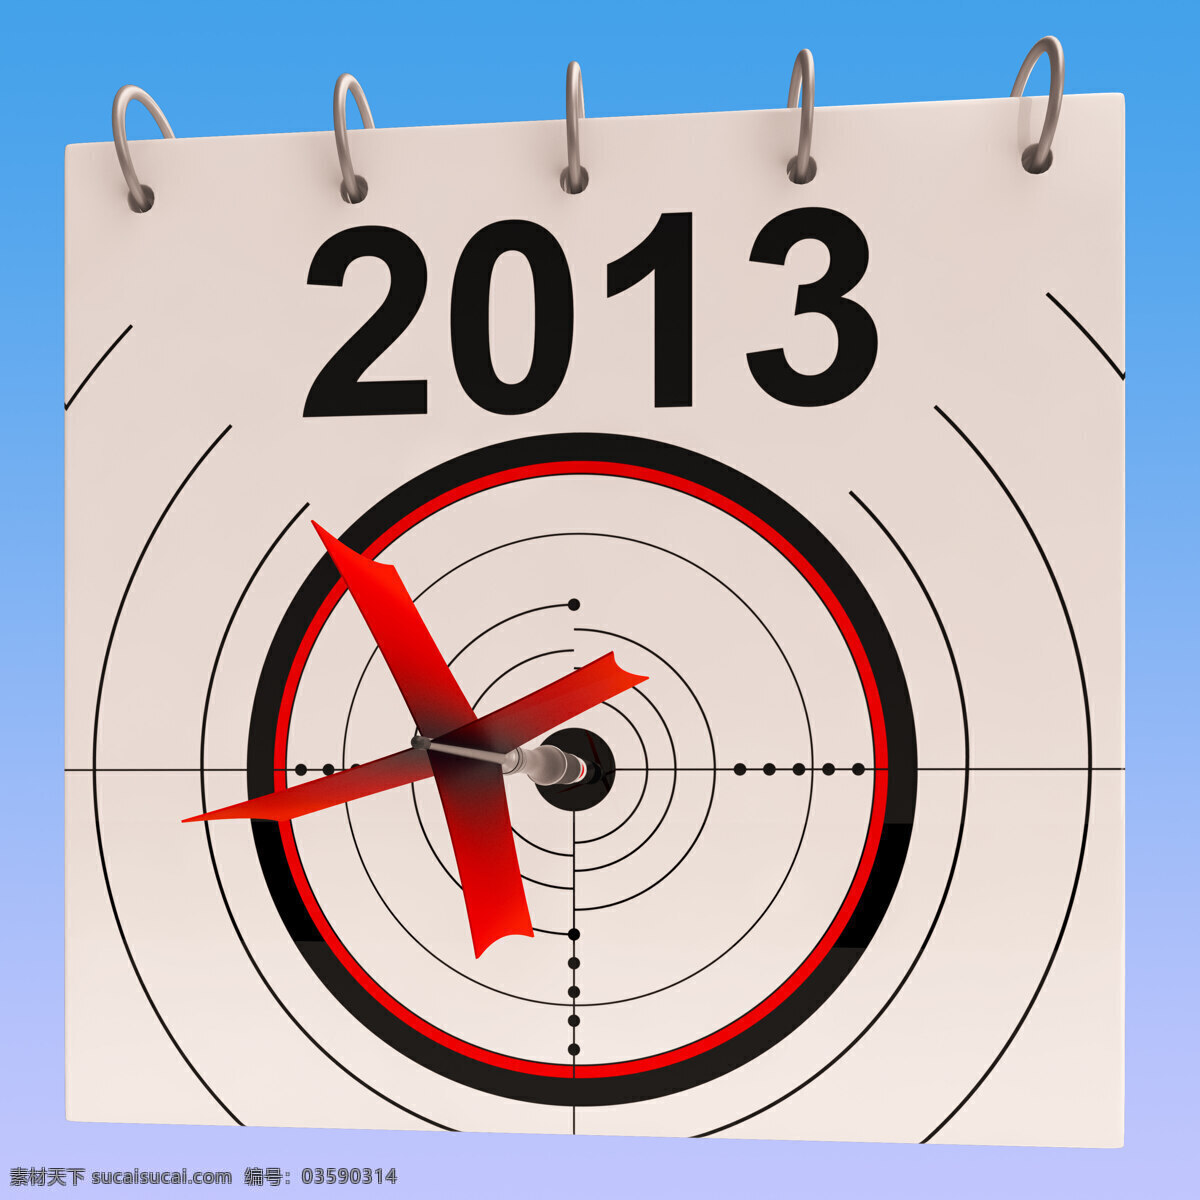 2013 日历 意味着 规划 年度 日程安排